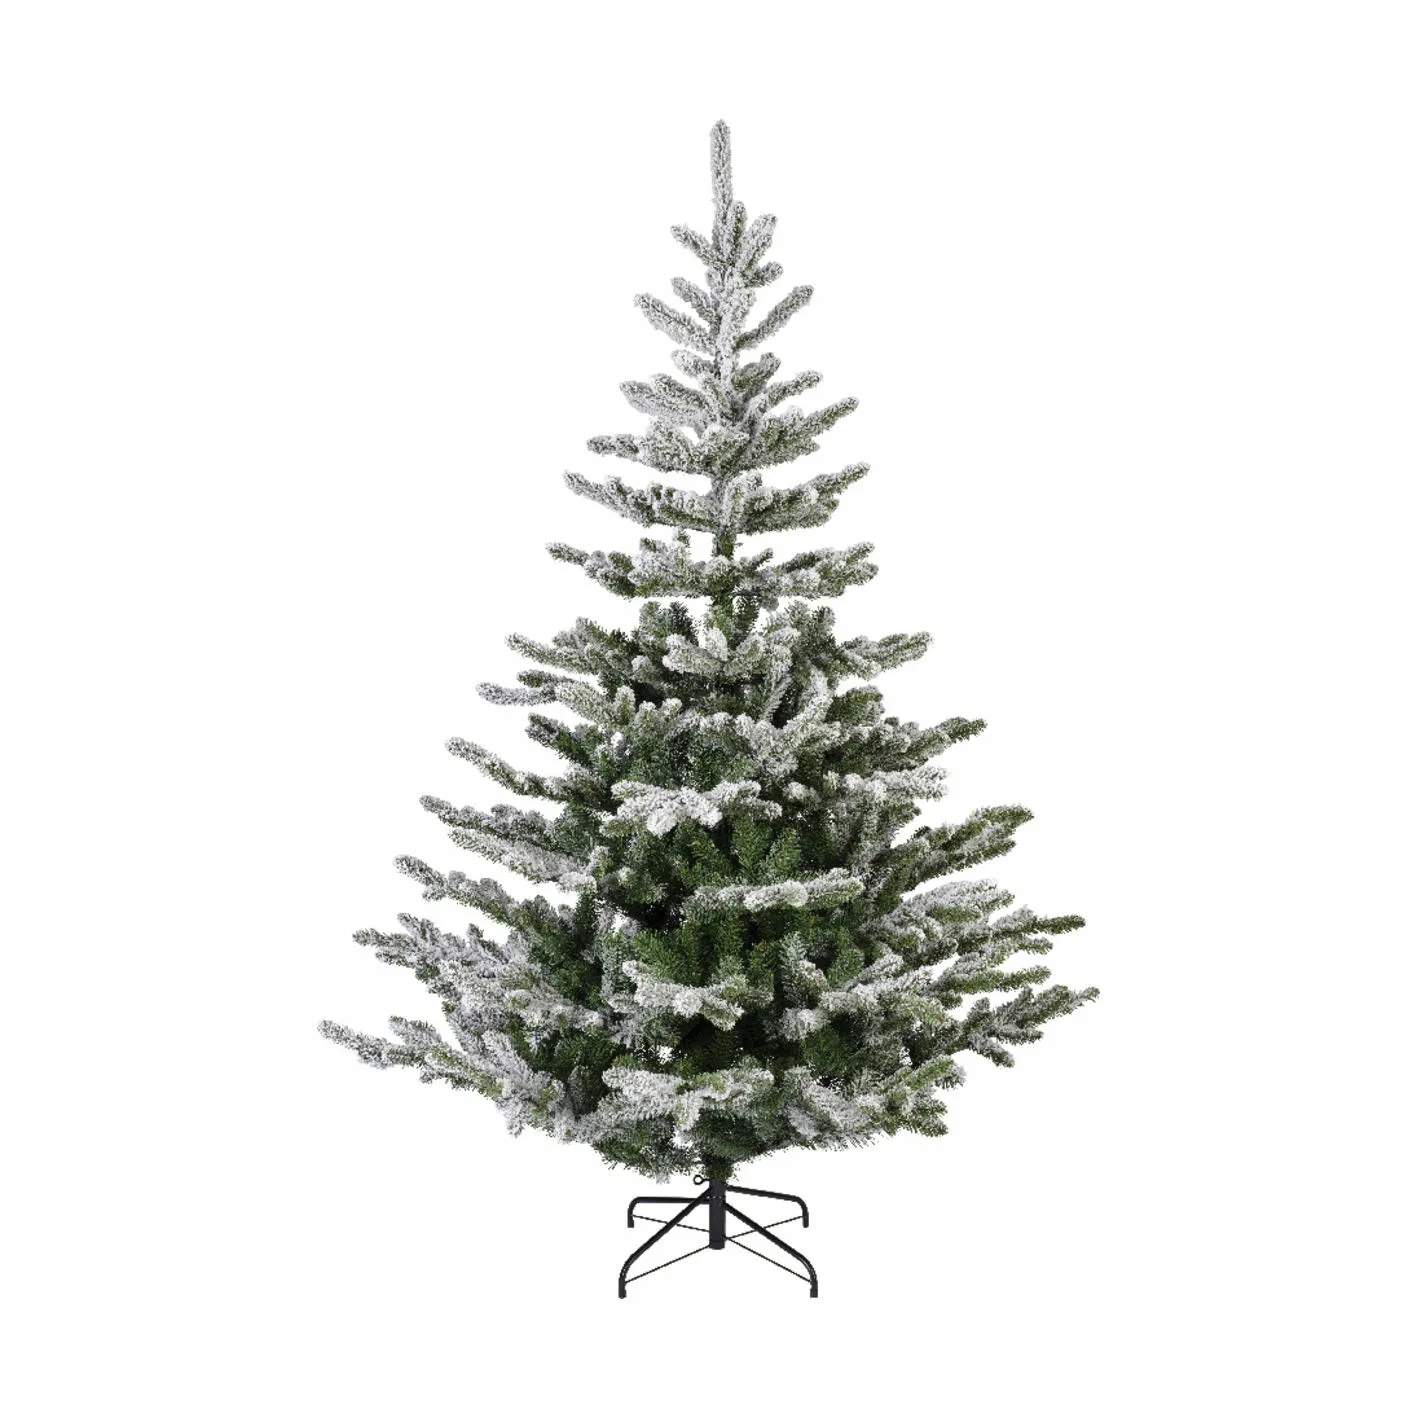 Liberty Spruce Kunstigt Juletræ m. sne, grøn/hvid, large